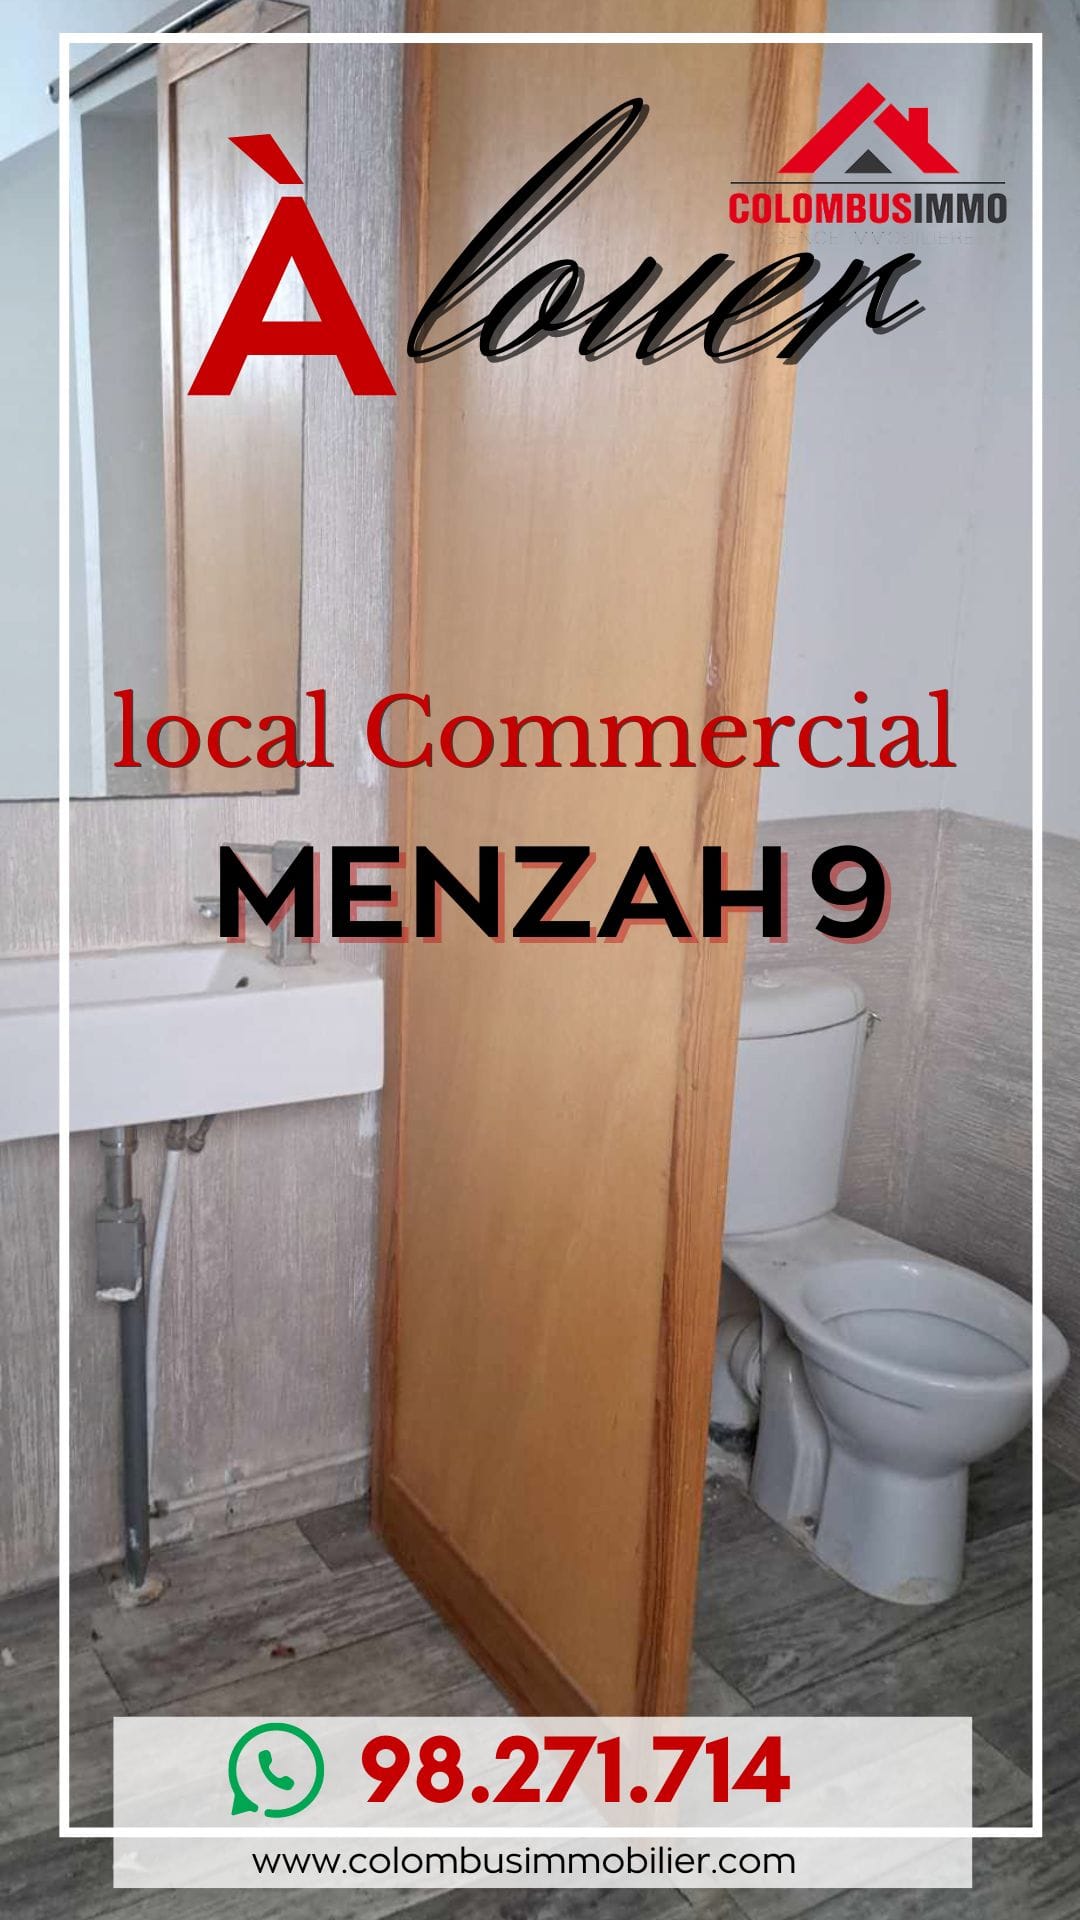 El Menzah El Menzah 9 Bureaux & Commerces Autre Local commercial  menzah9